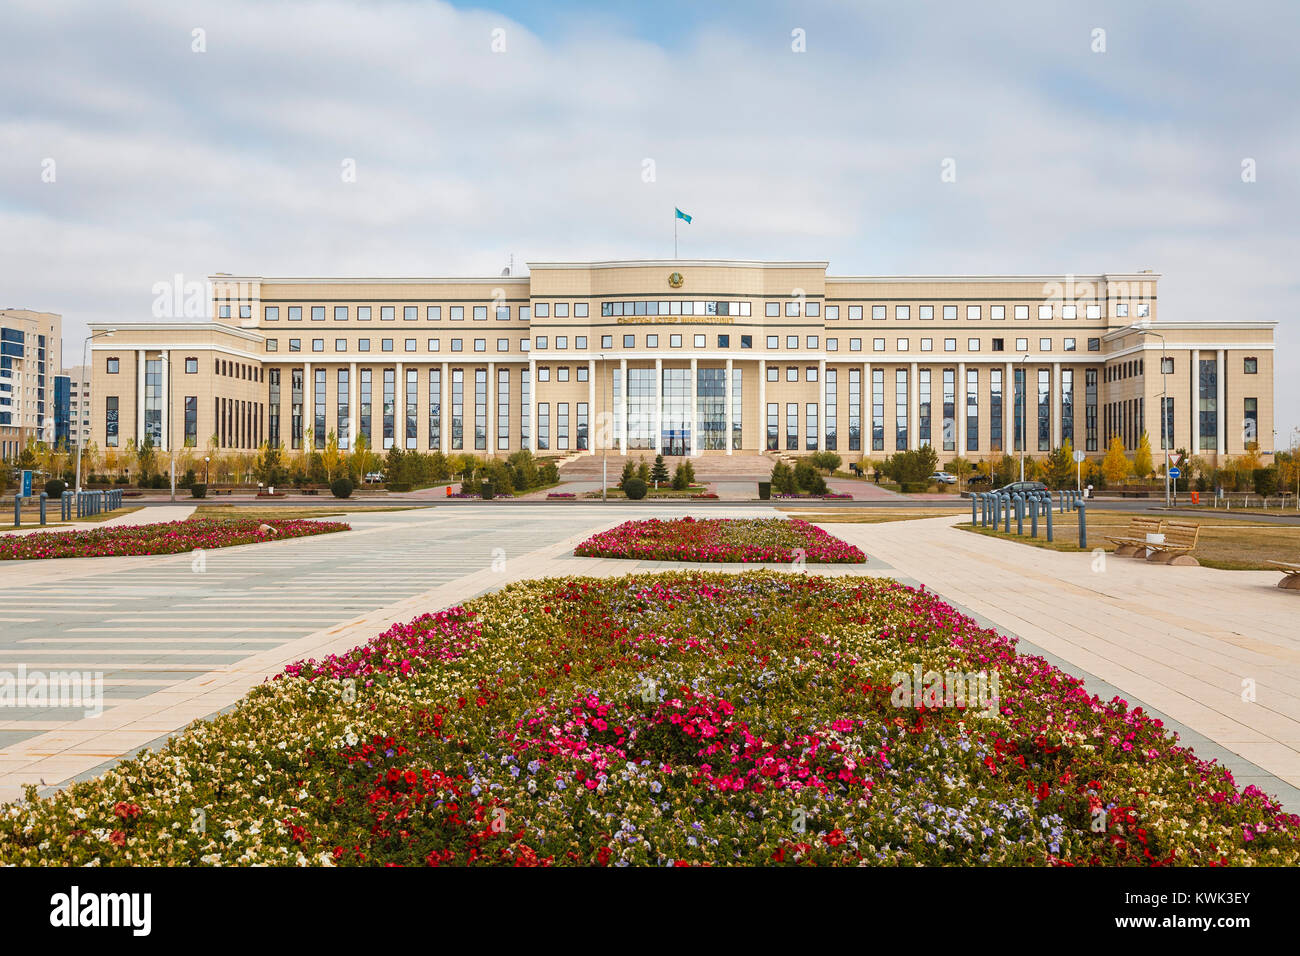 Ministero degli Affari Esteri uffici governativi in un moderno e basso edificio amministrativo a Nur-Sultan (Astana), capitale del Kazakhstan Foto Stock